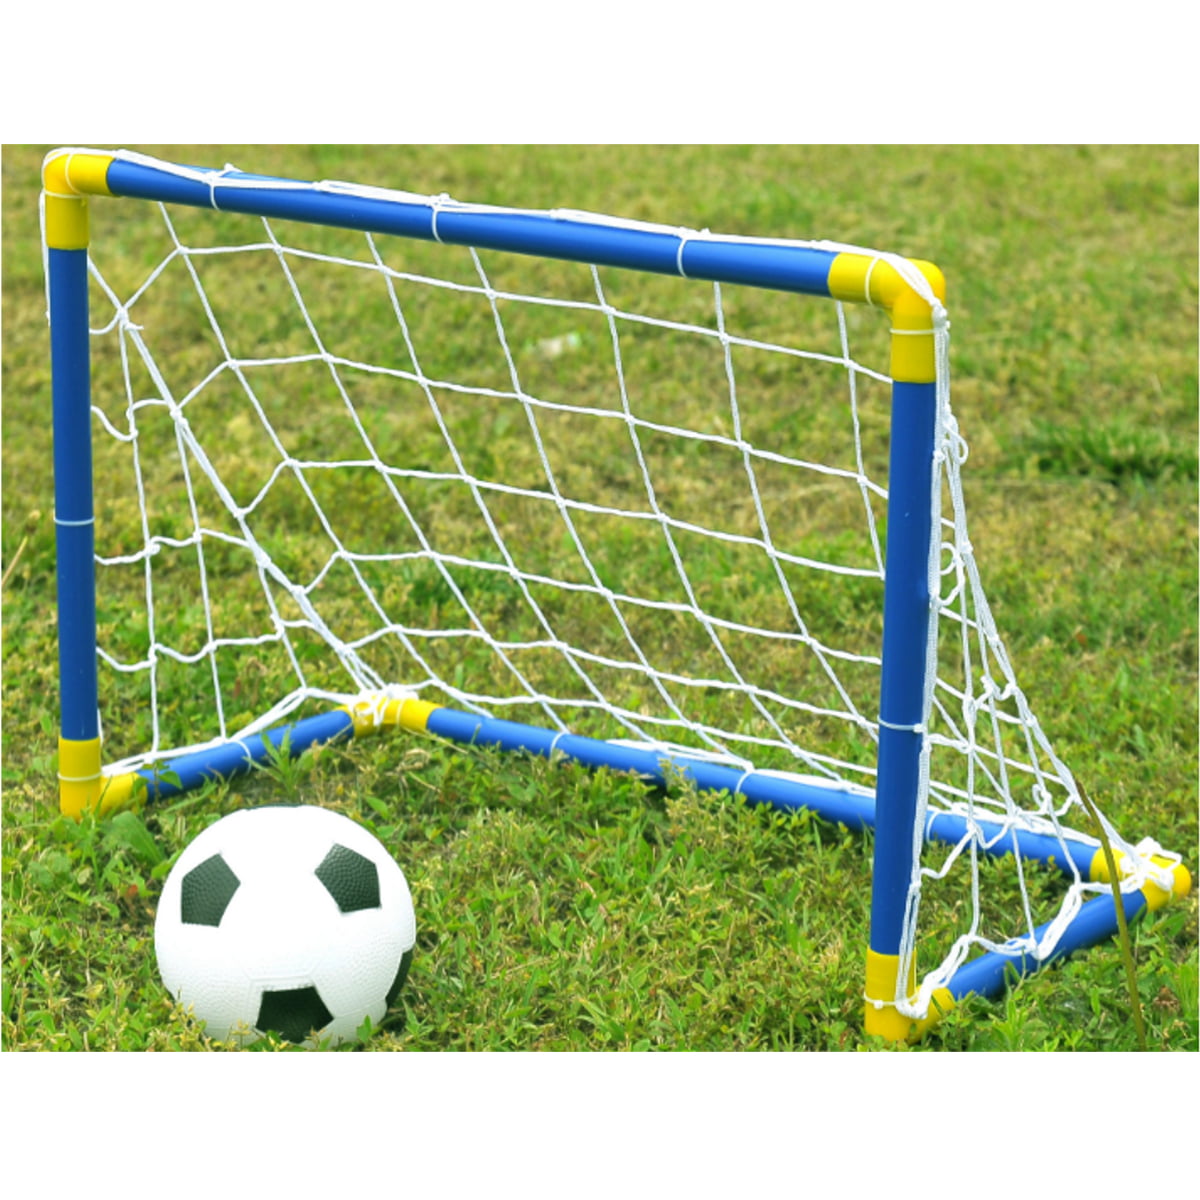 Pump Net Details about   Kids Beginner Soccer Goal Set Indoor Outdoor Stand w/ Ball 